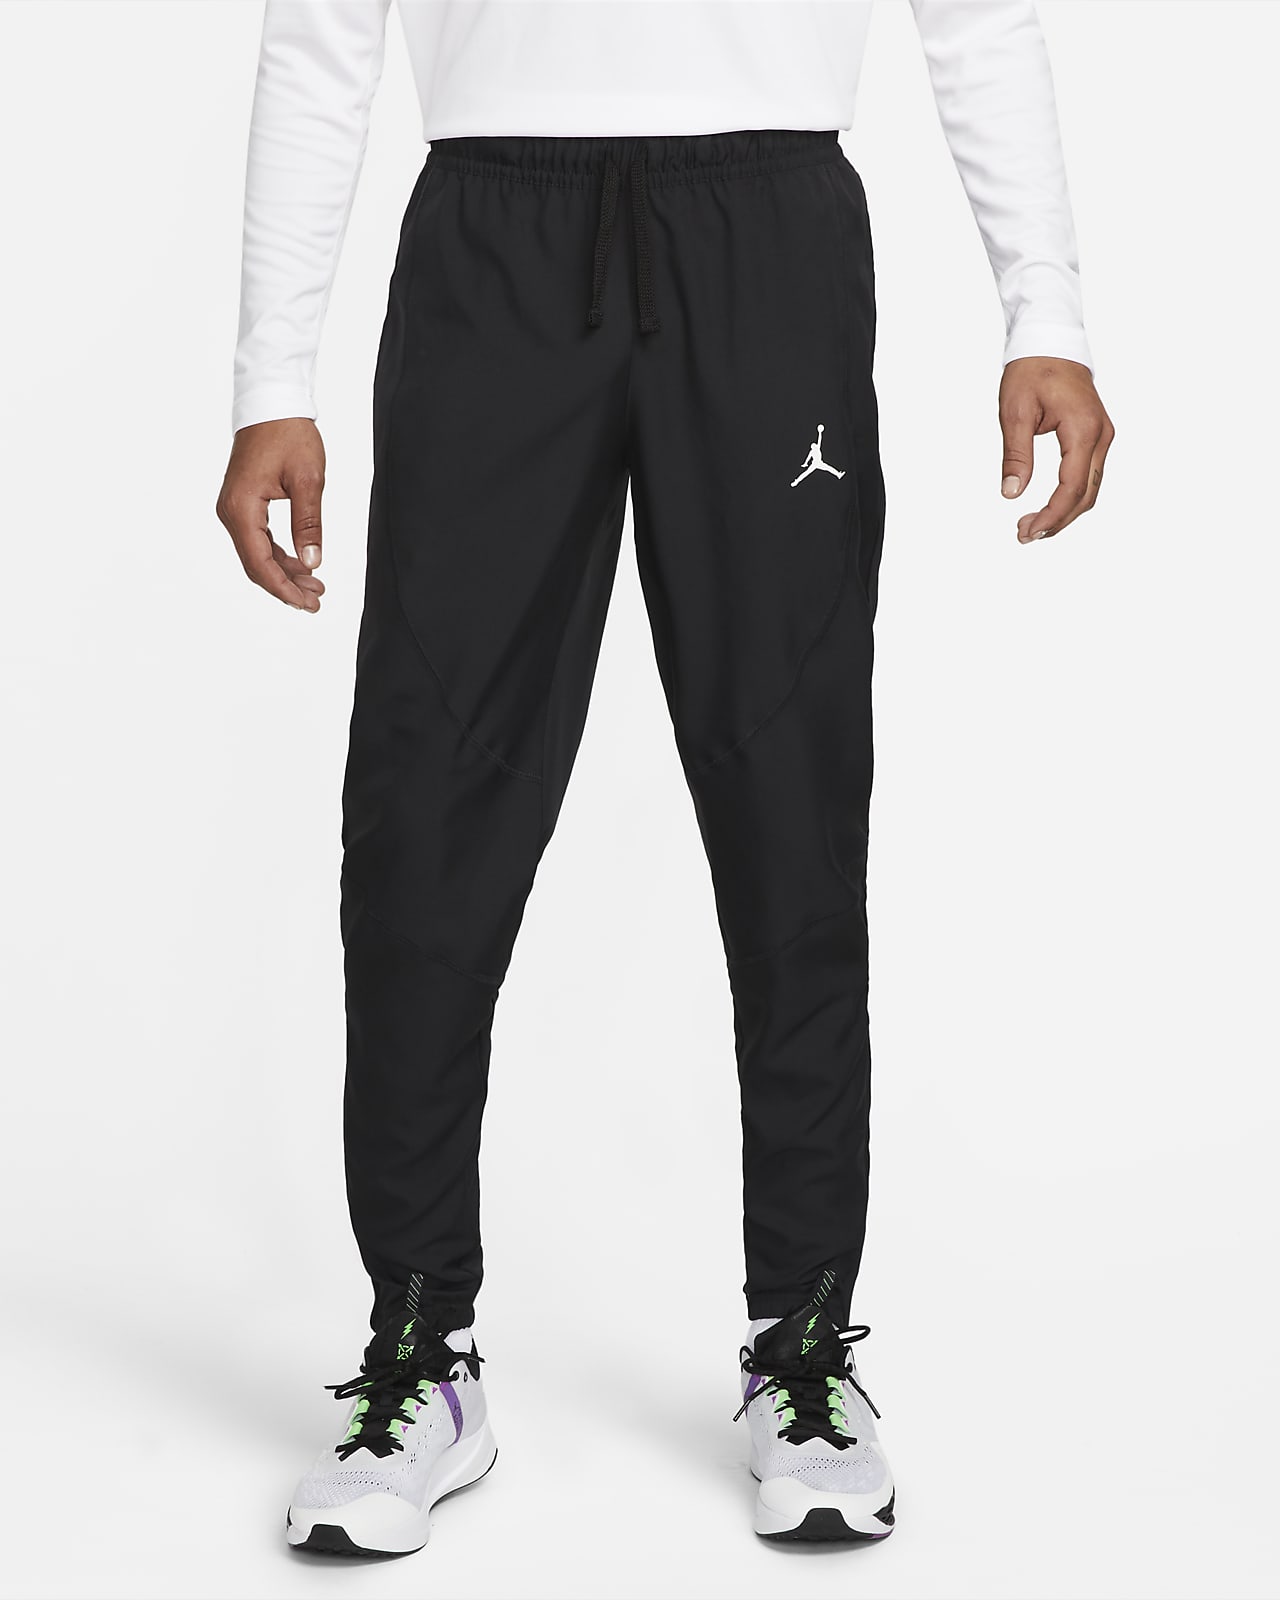 Jordan Sport Dri-FIT Pantalons de teixit Woven - Home